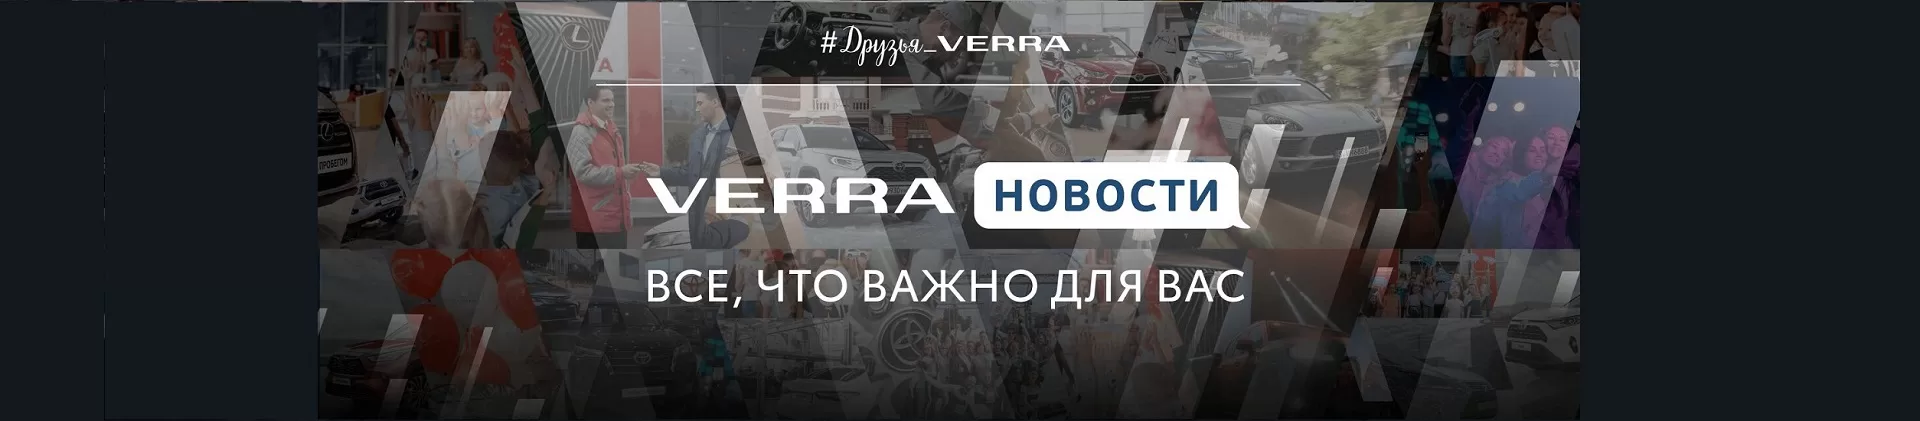 Новости для клиентов VERRA. Все, что важно для Вас